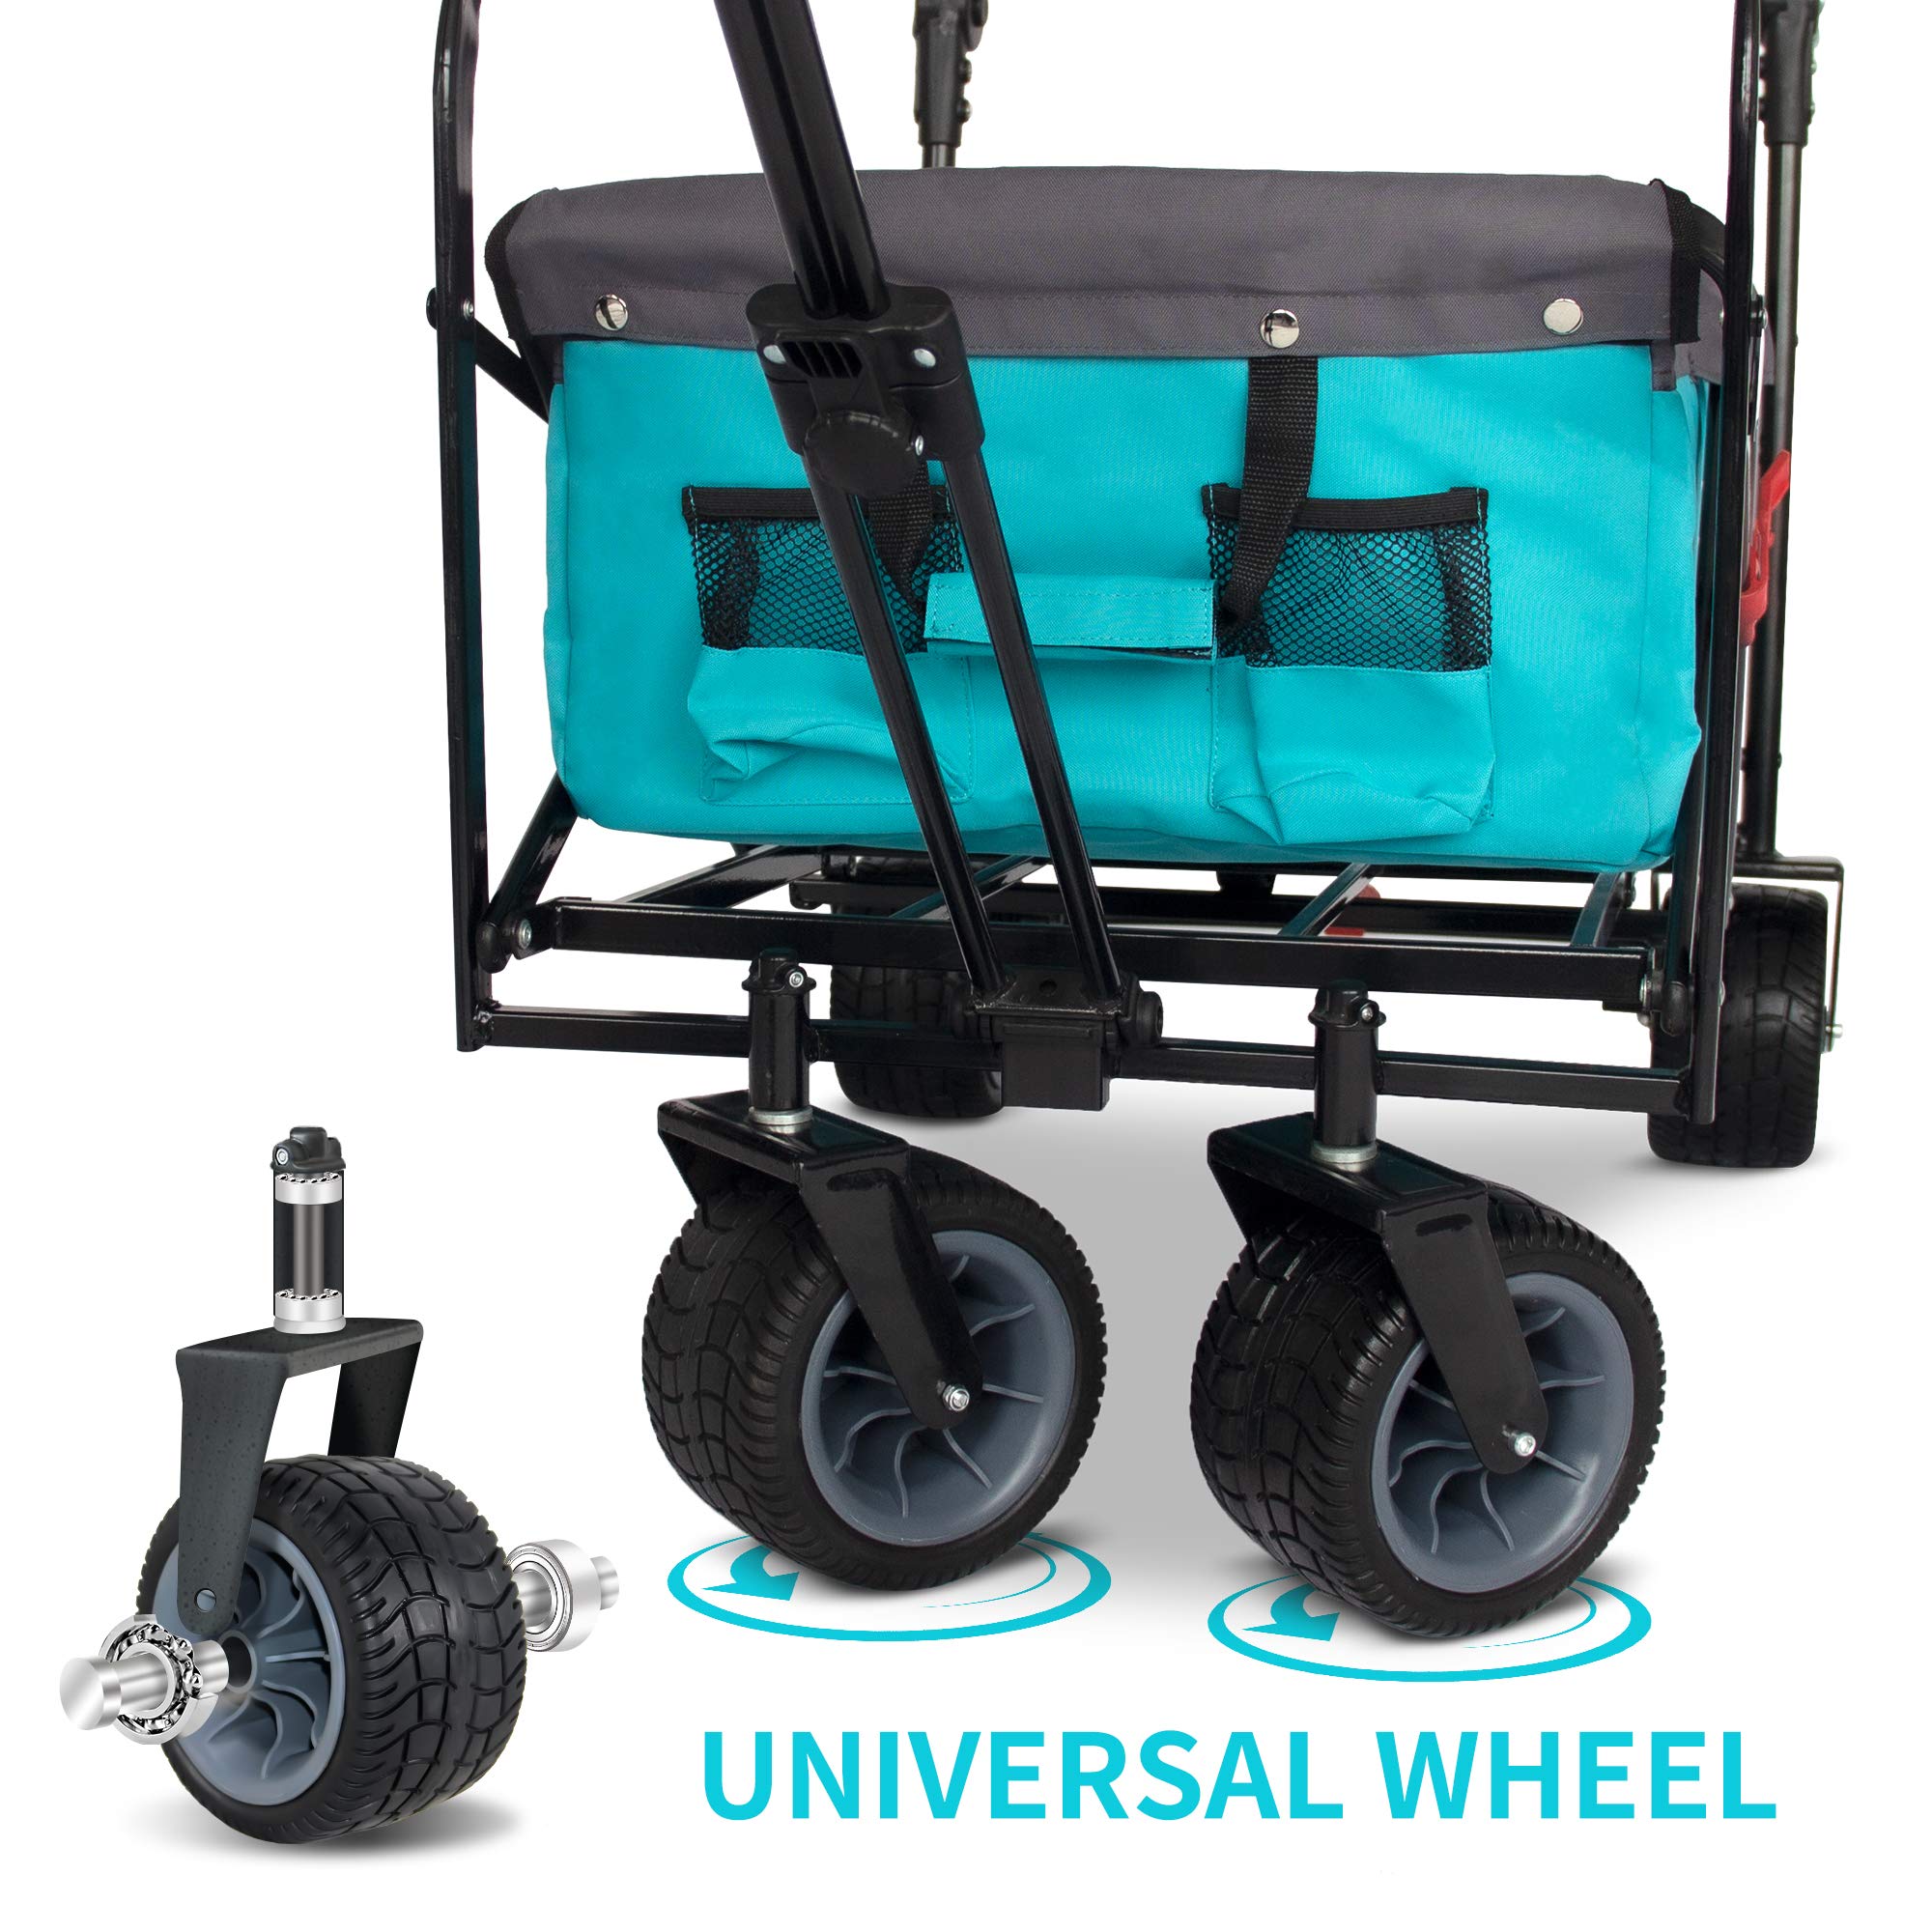 TMZ All Terrain Utility Folding Wagon, Collapsible Garden Cart, Heavy Duty Beach Wagon, for Shopping, Camping, and Outdoor Activ